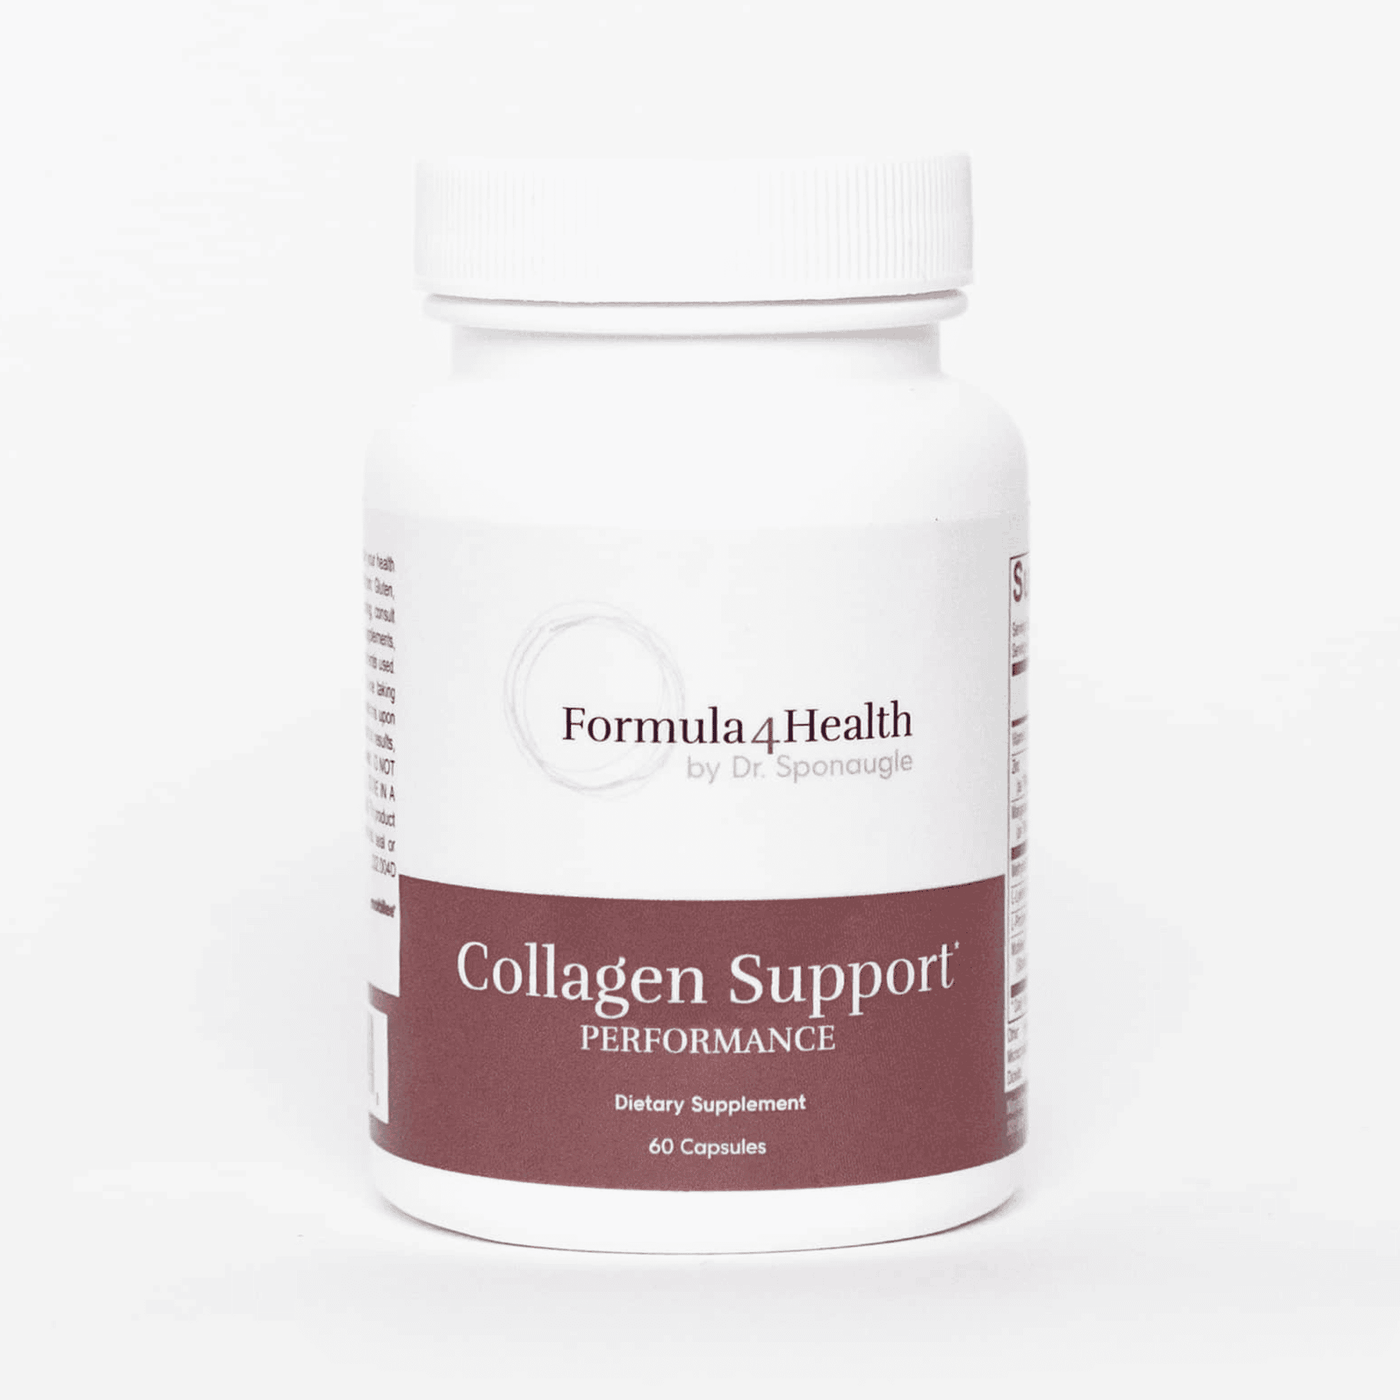 Collagen Support